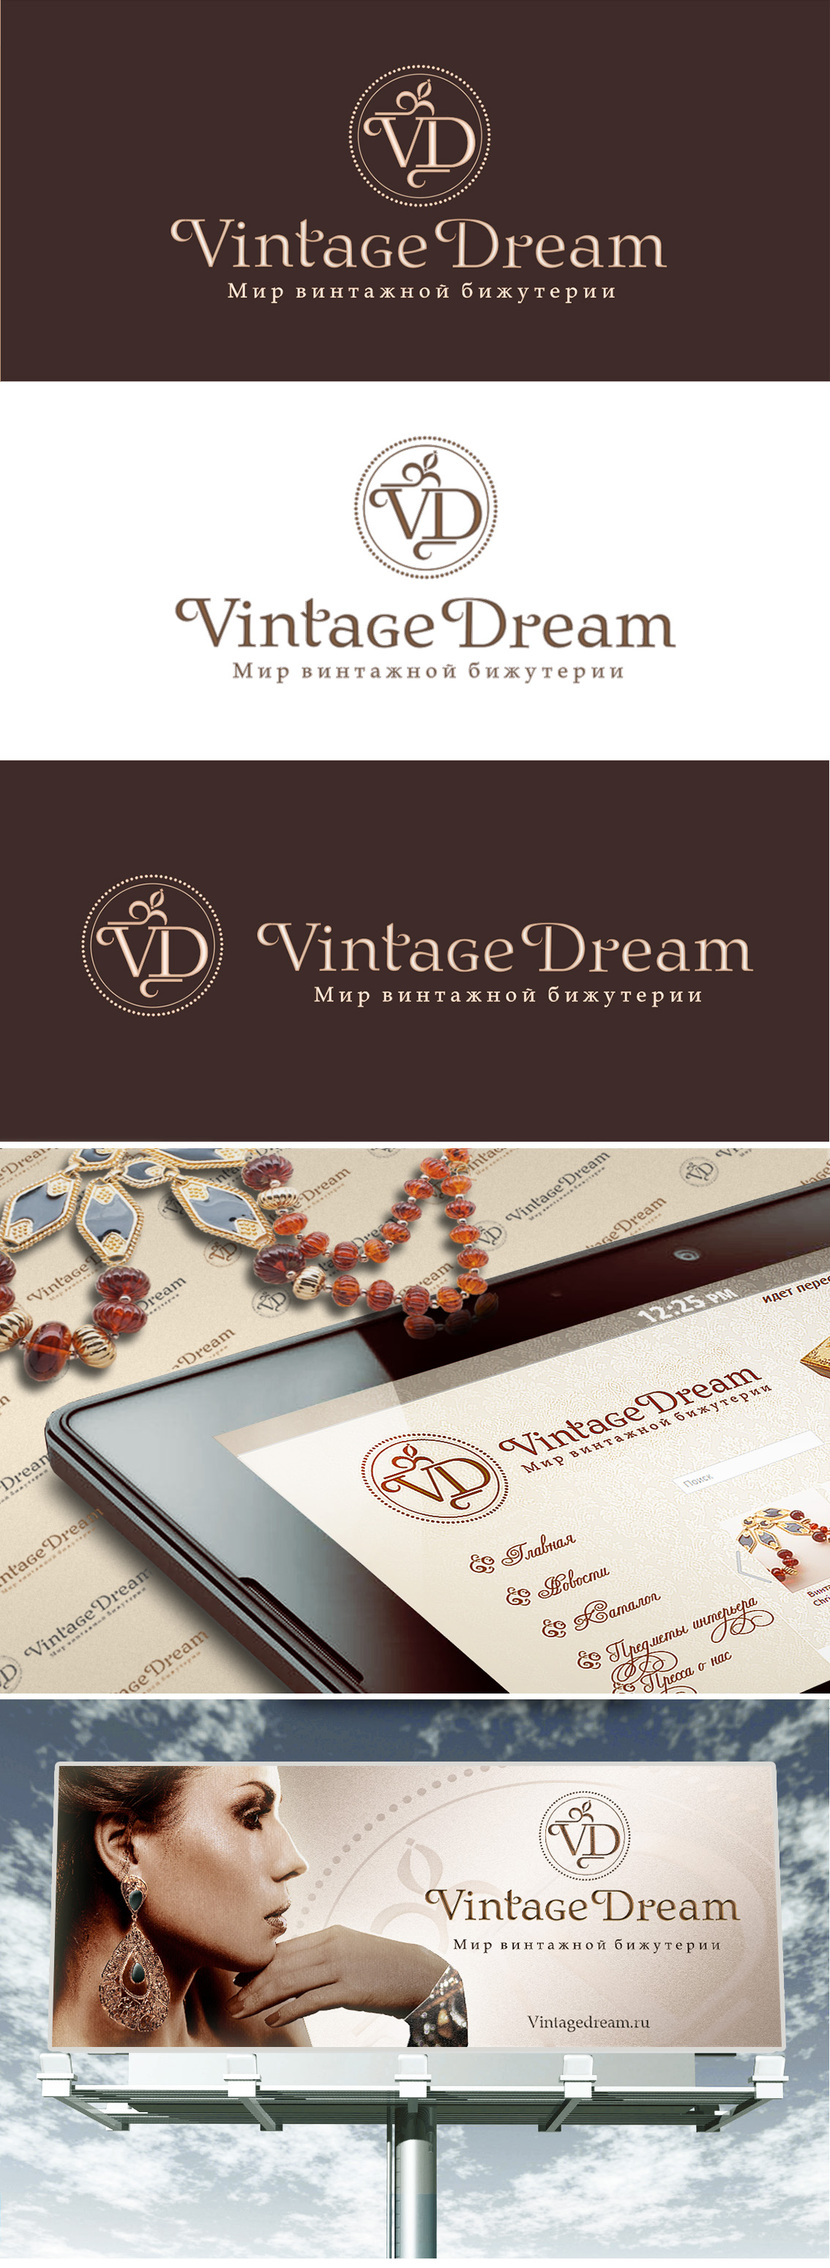 4. Логотип на сайте и на билборде - Логотип для сайта винтажной бижутерии, одежды, аксессуаров Vintagedream.ru